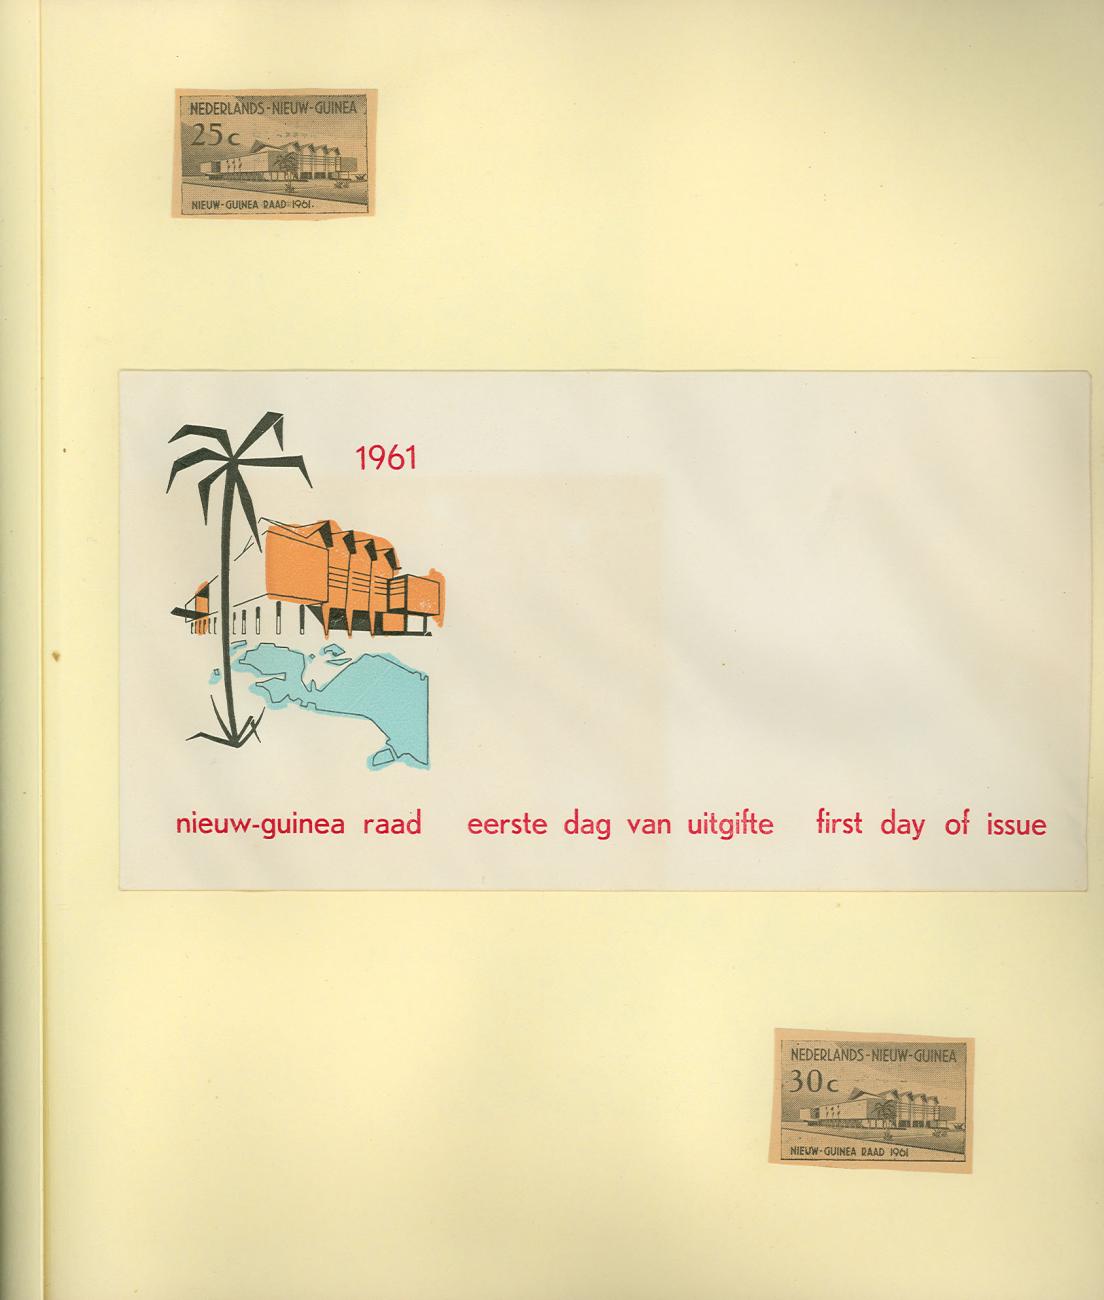 BD/83/27 - 
Eerstedag postzegels en envelop ter gelegenheid van de Nieuw-Guinea Raad 1961
